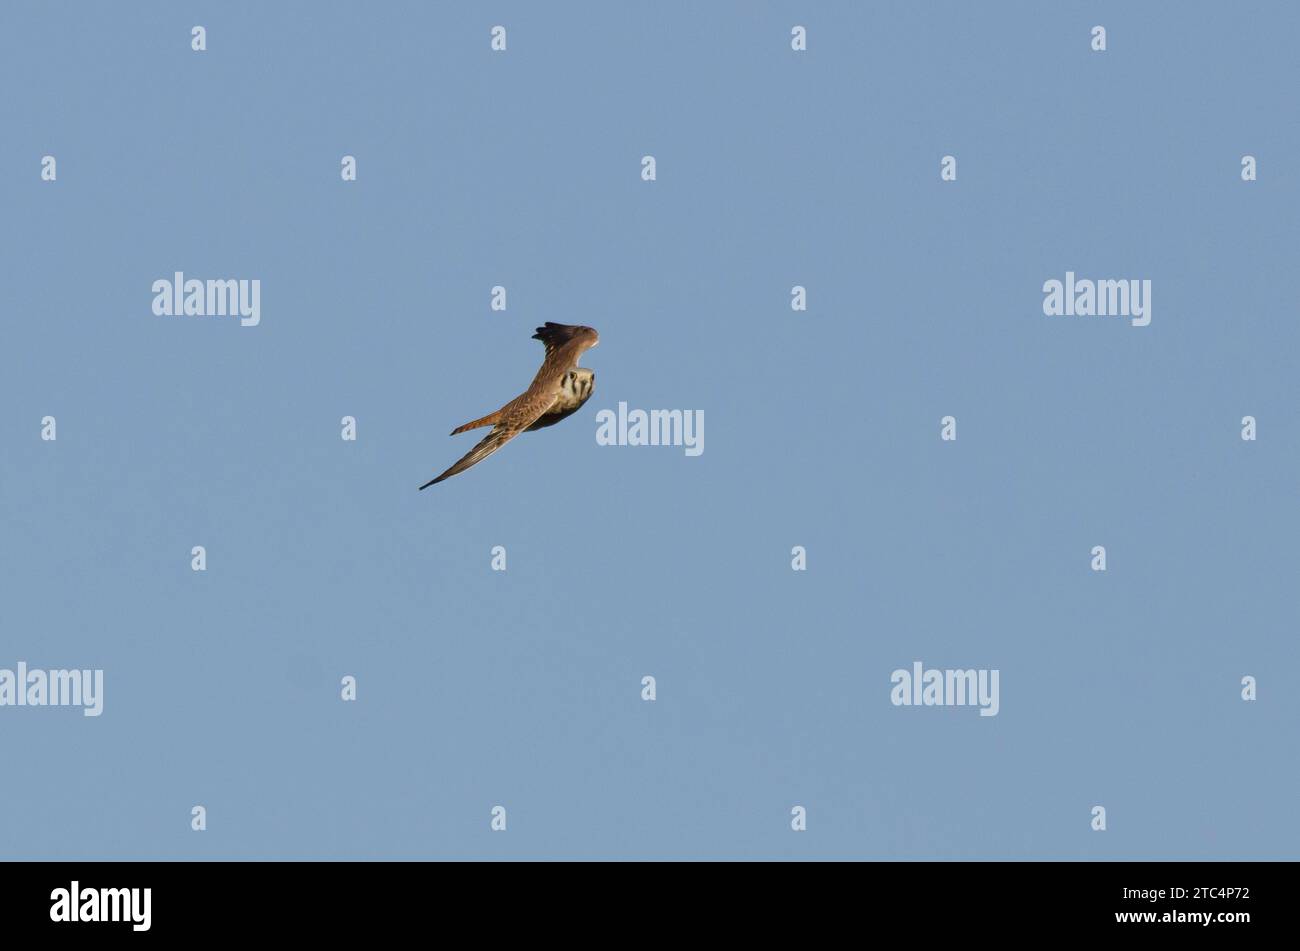 American Kestrel, Falco sparverius, in flight Stock Photo